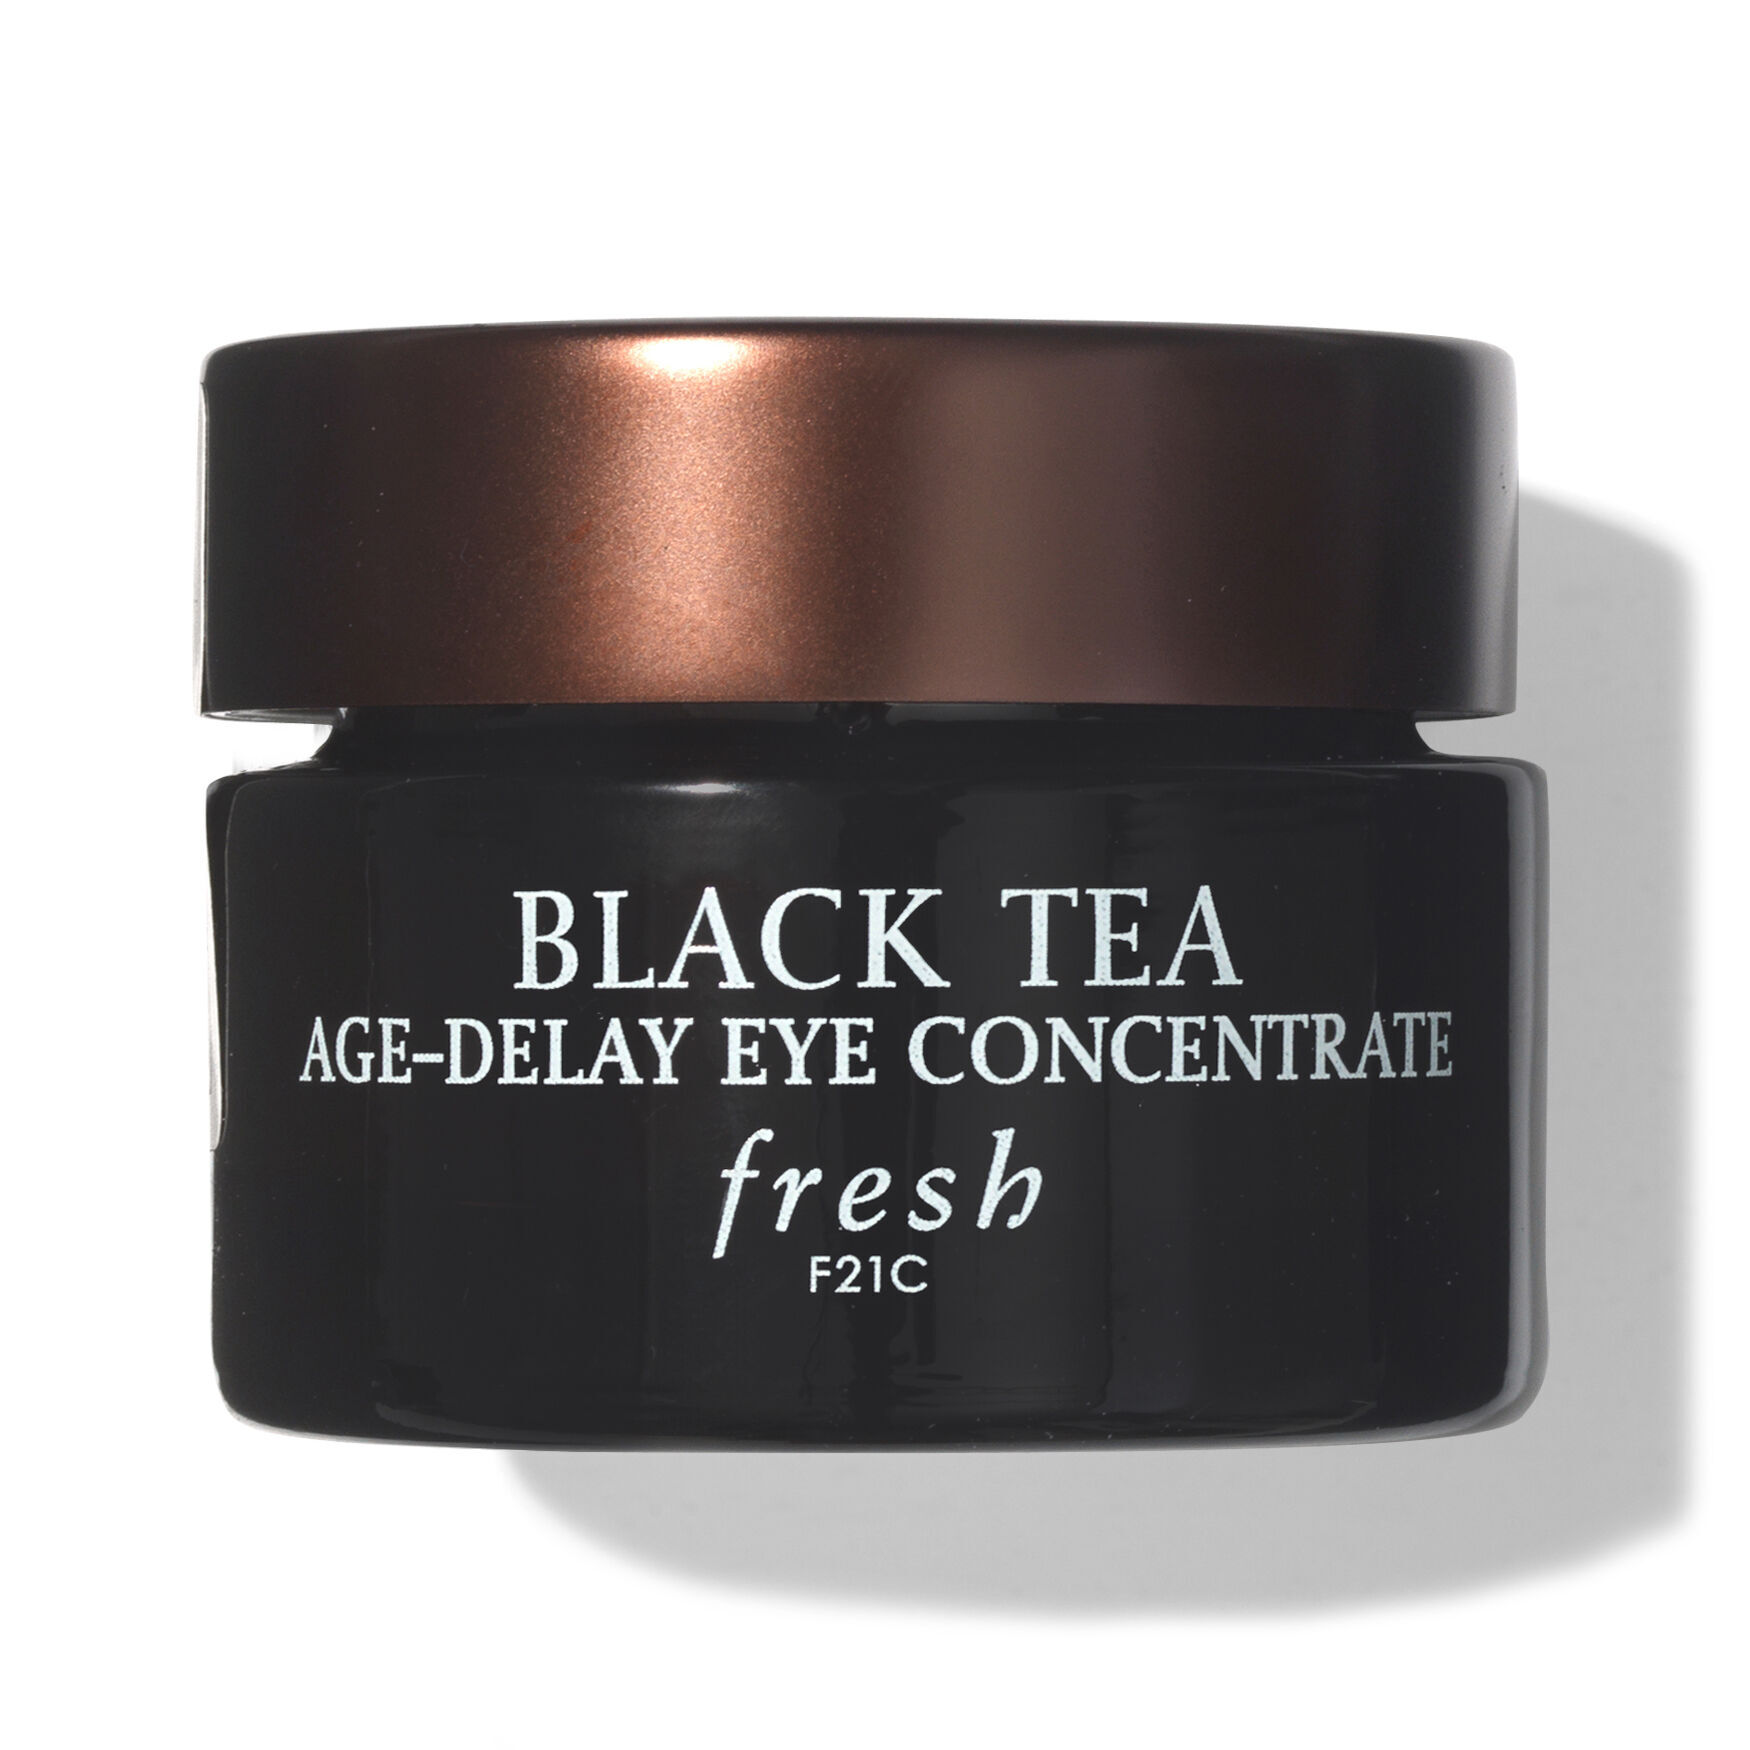 Fresh - Black Tea Age-Delay Eye Concentrate by Fresh